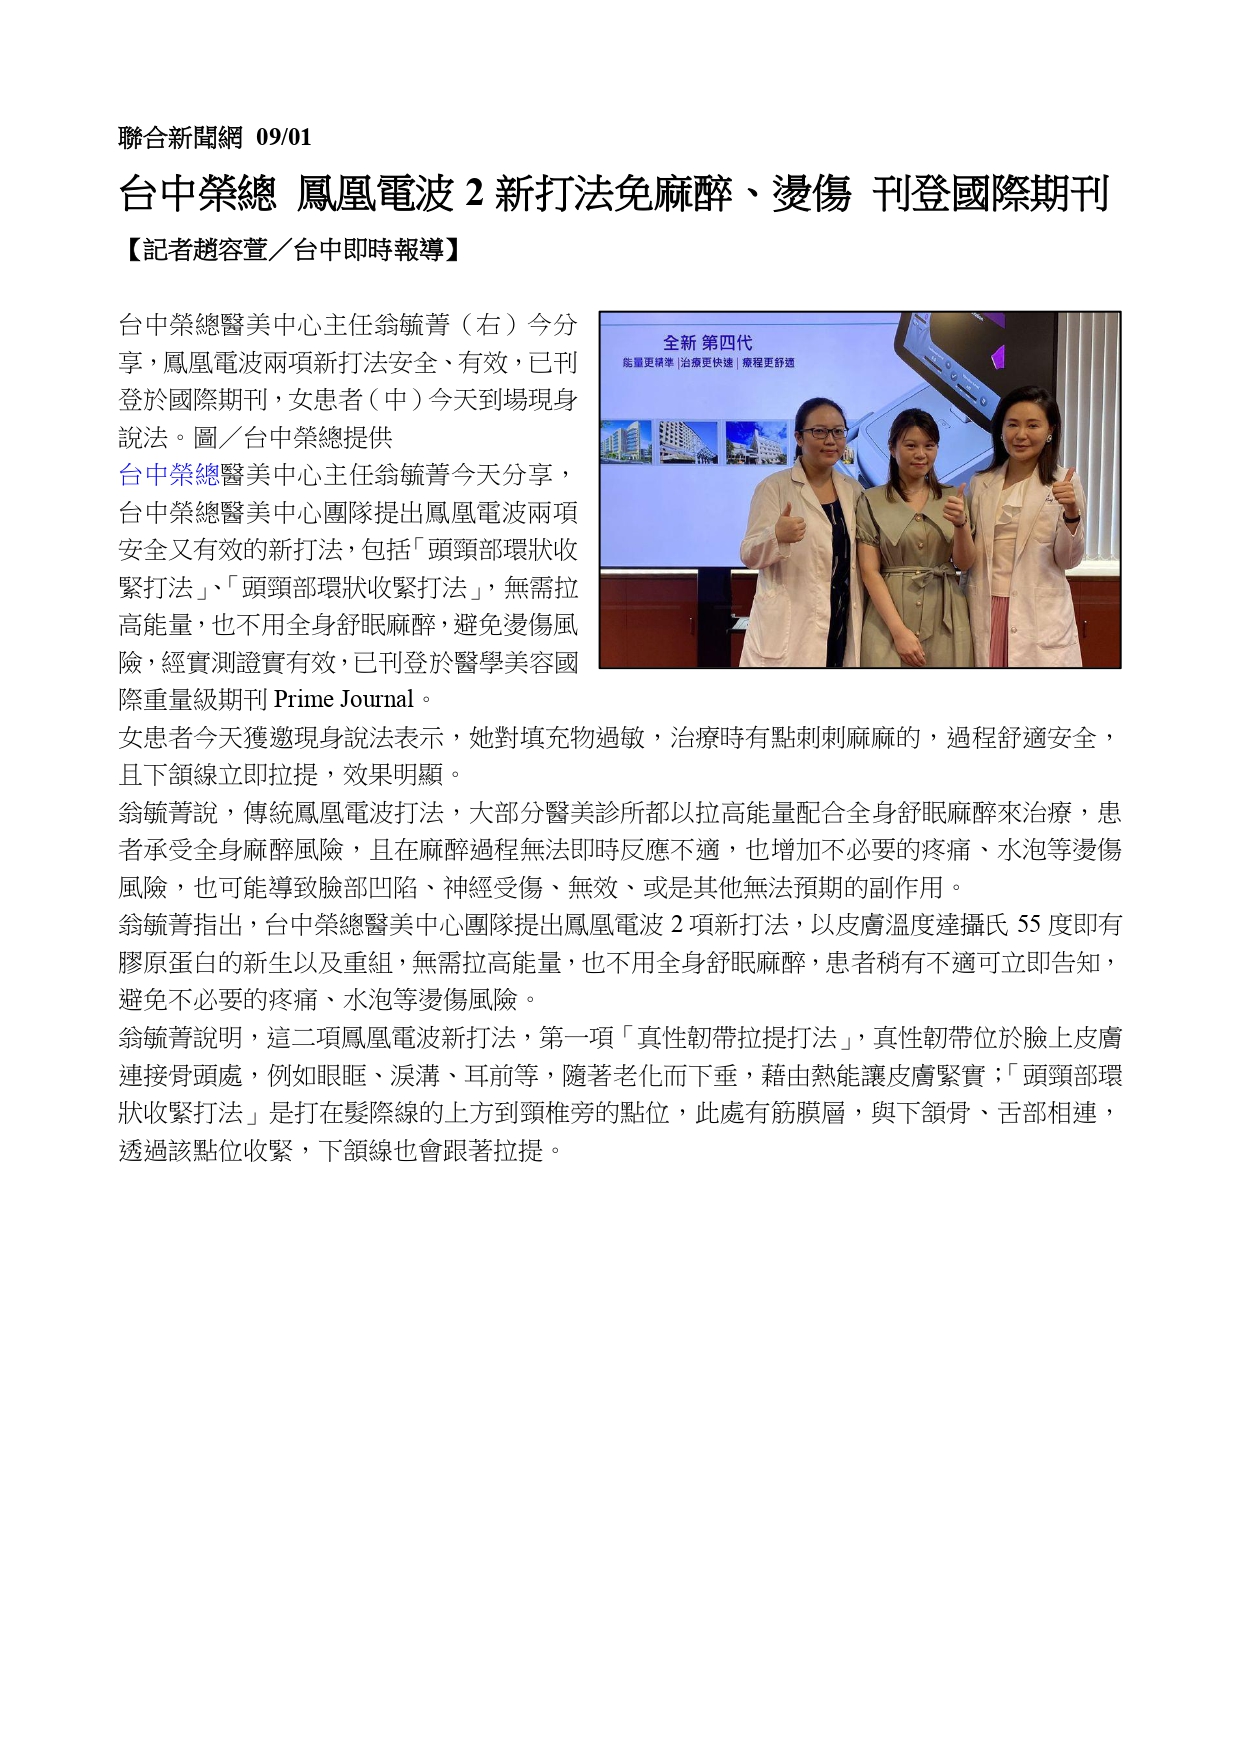 臺中榮總醫美中心最新國際期刊發表「有效、減痛又安全的鳳凰電波新打法」